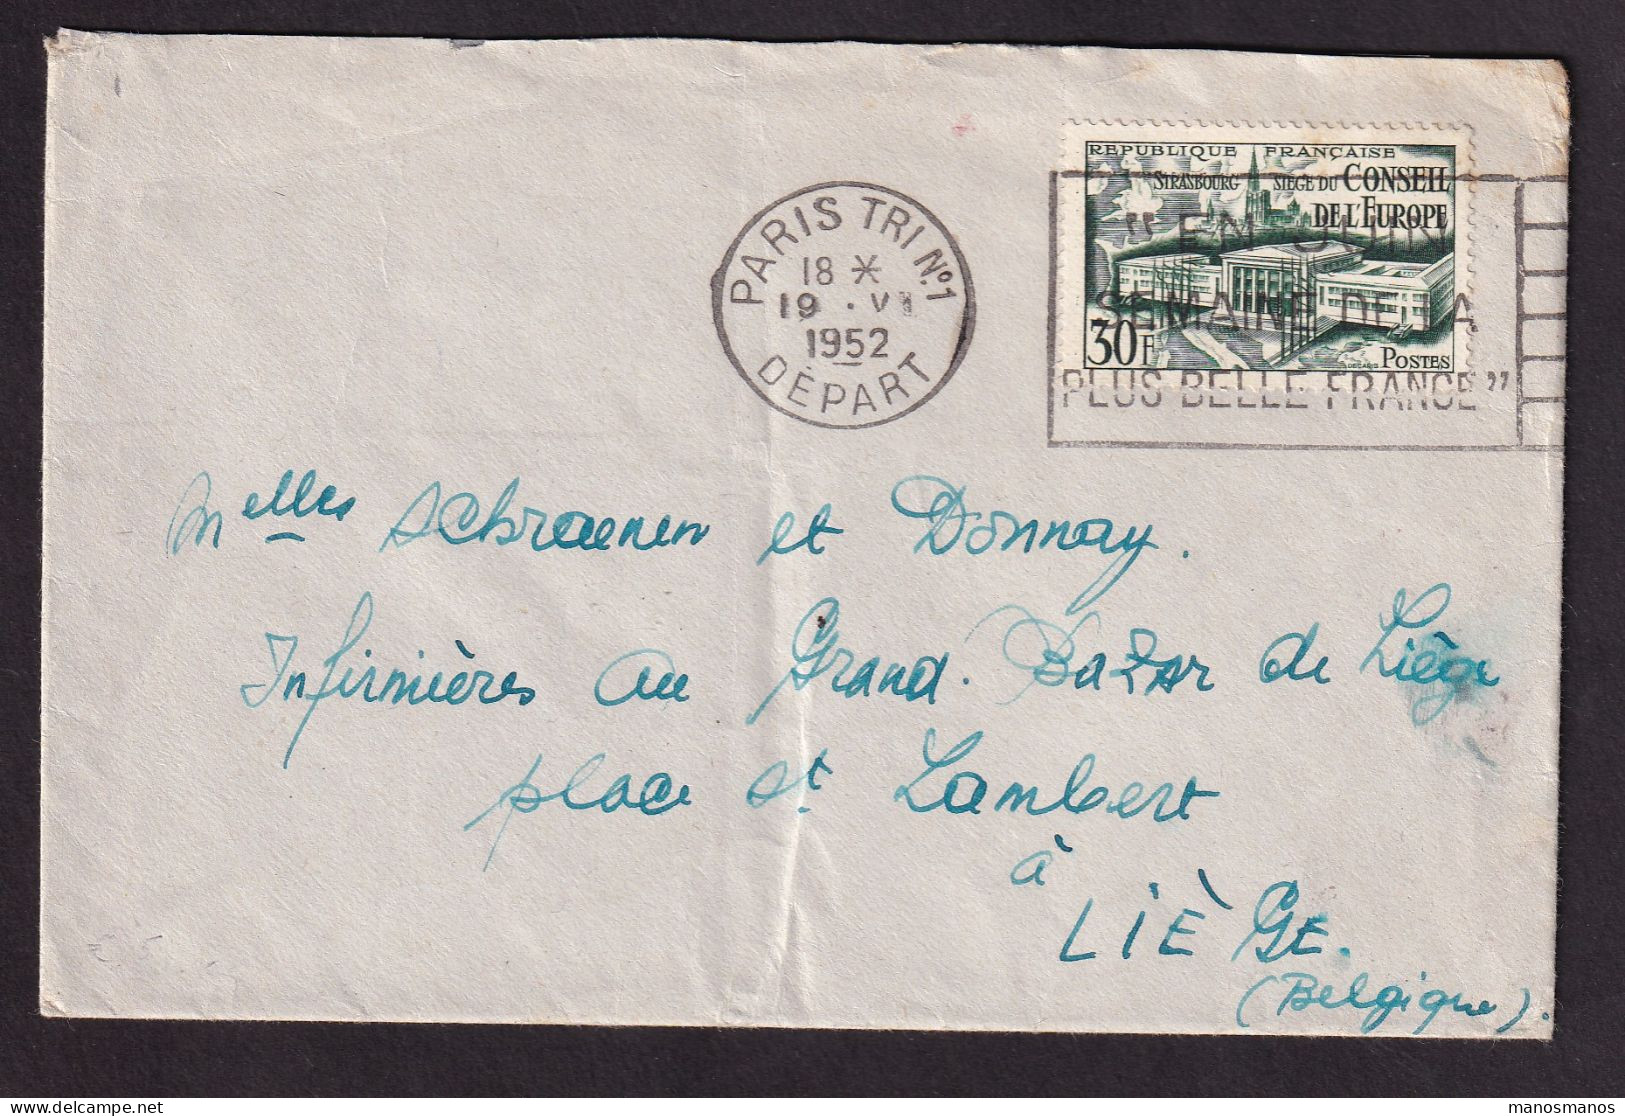 DDGG 041 - Enveloppe TP 923 (Conseil De L'Europe) PARIS 1952 Vers LIEGE Belgique - Covers & Documents